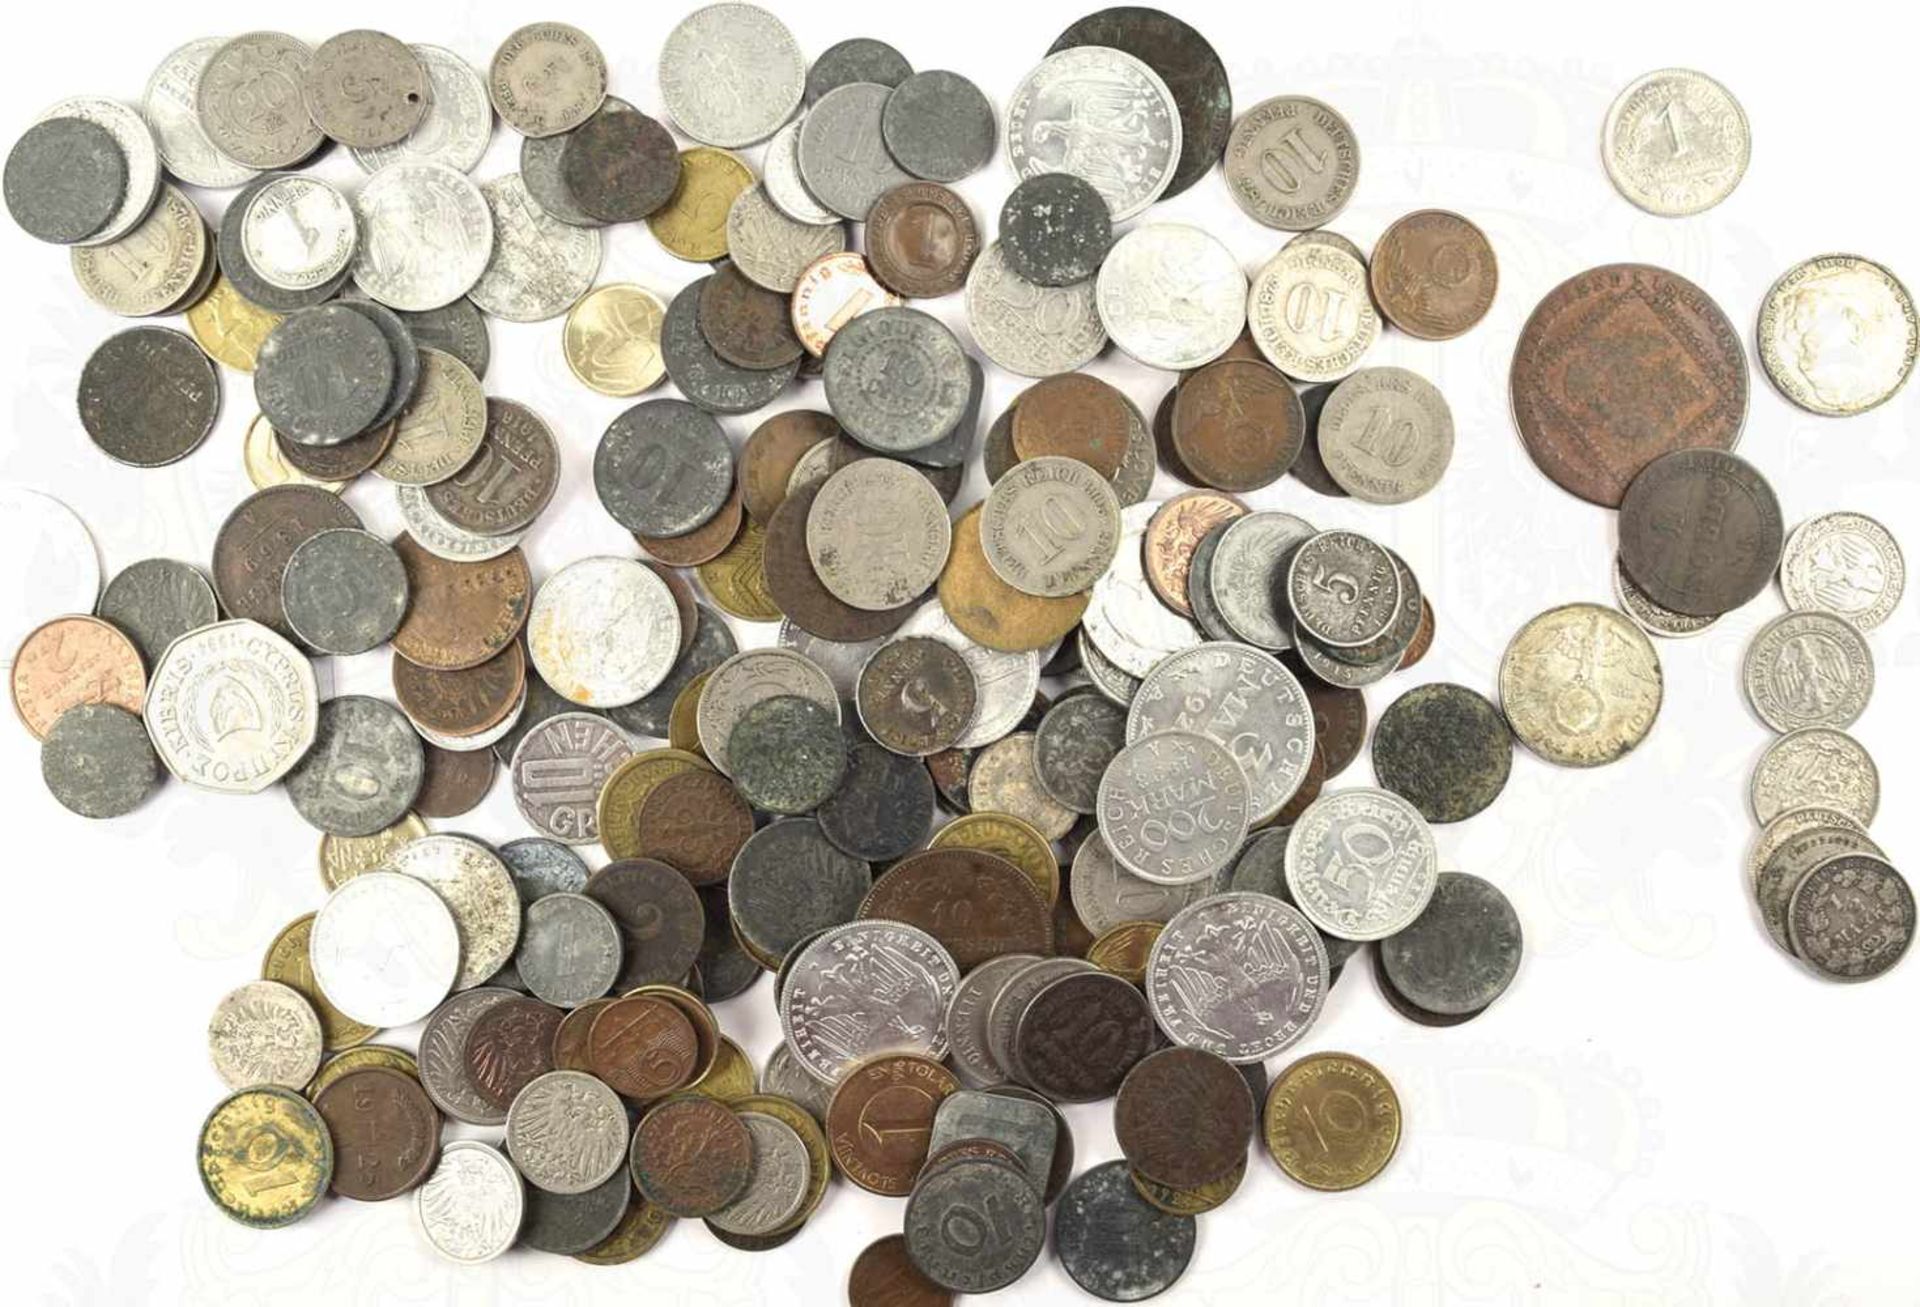 209 KLEINMÜNZEN, meist Deutschland 1873-1943, davon 6 St. Silber (4x 1/2 Mark, 2x 2 M.